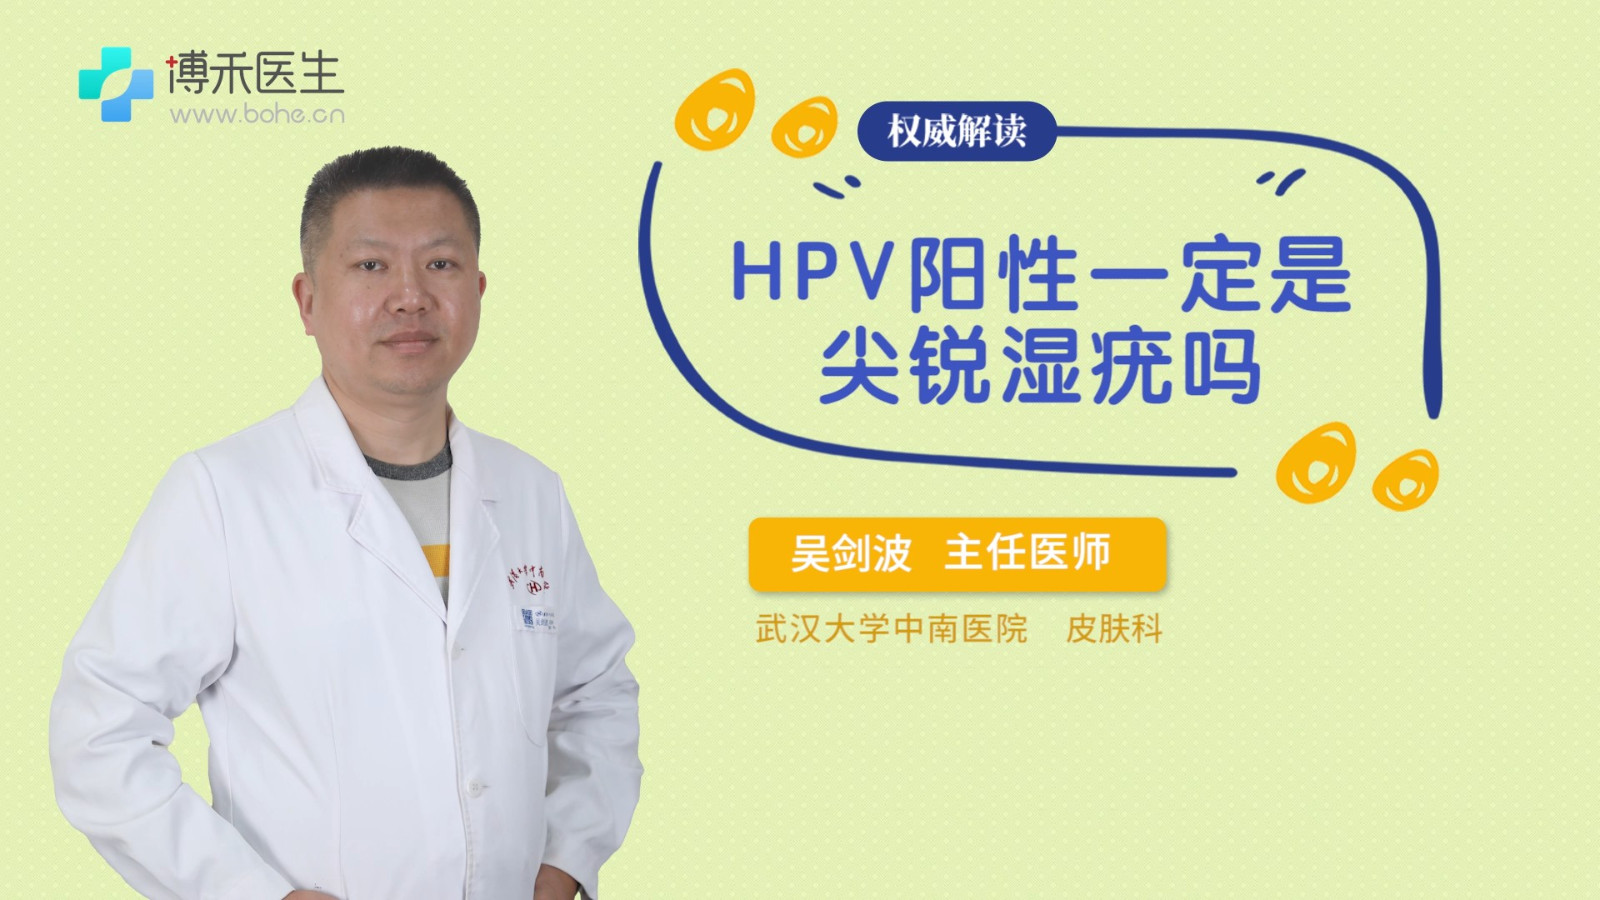 HPV阳性一定是尖锐湿疣吗